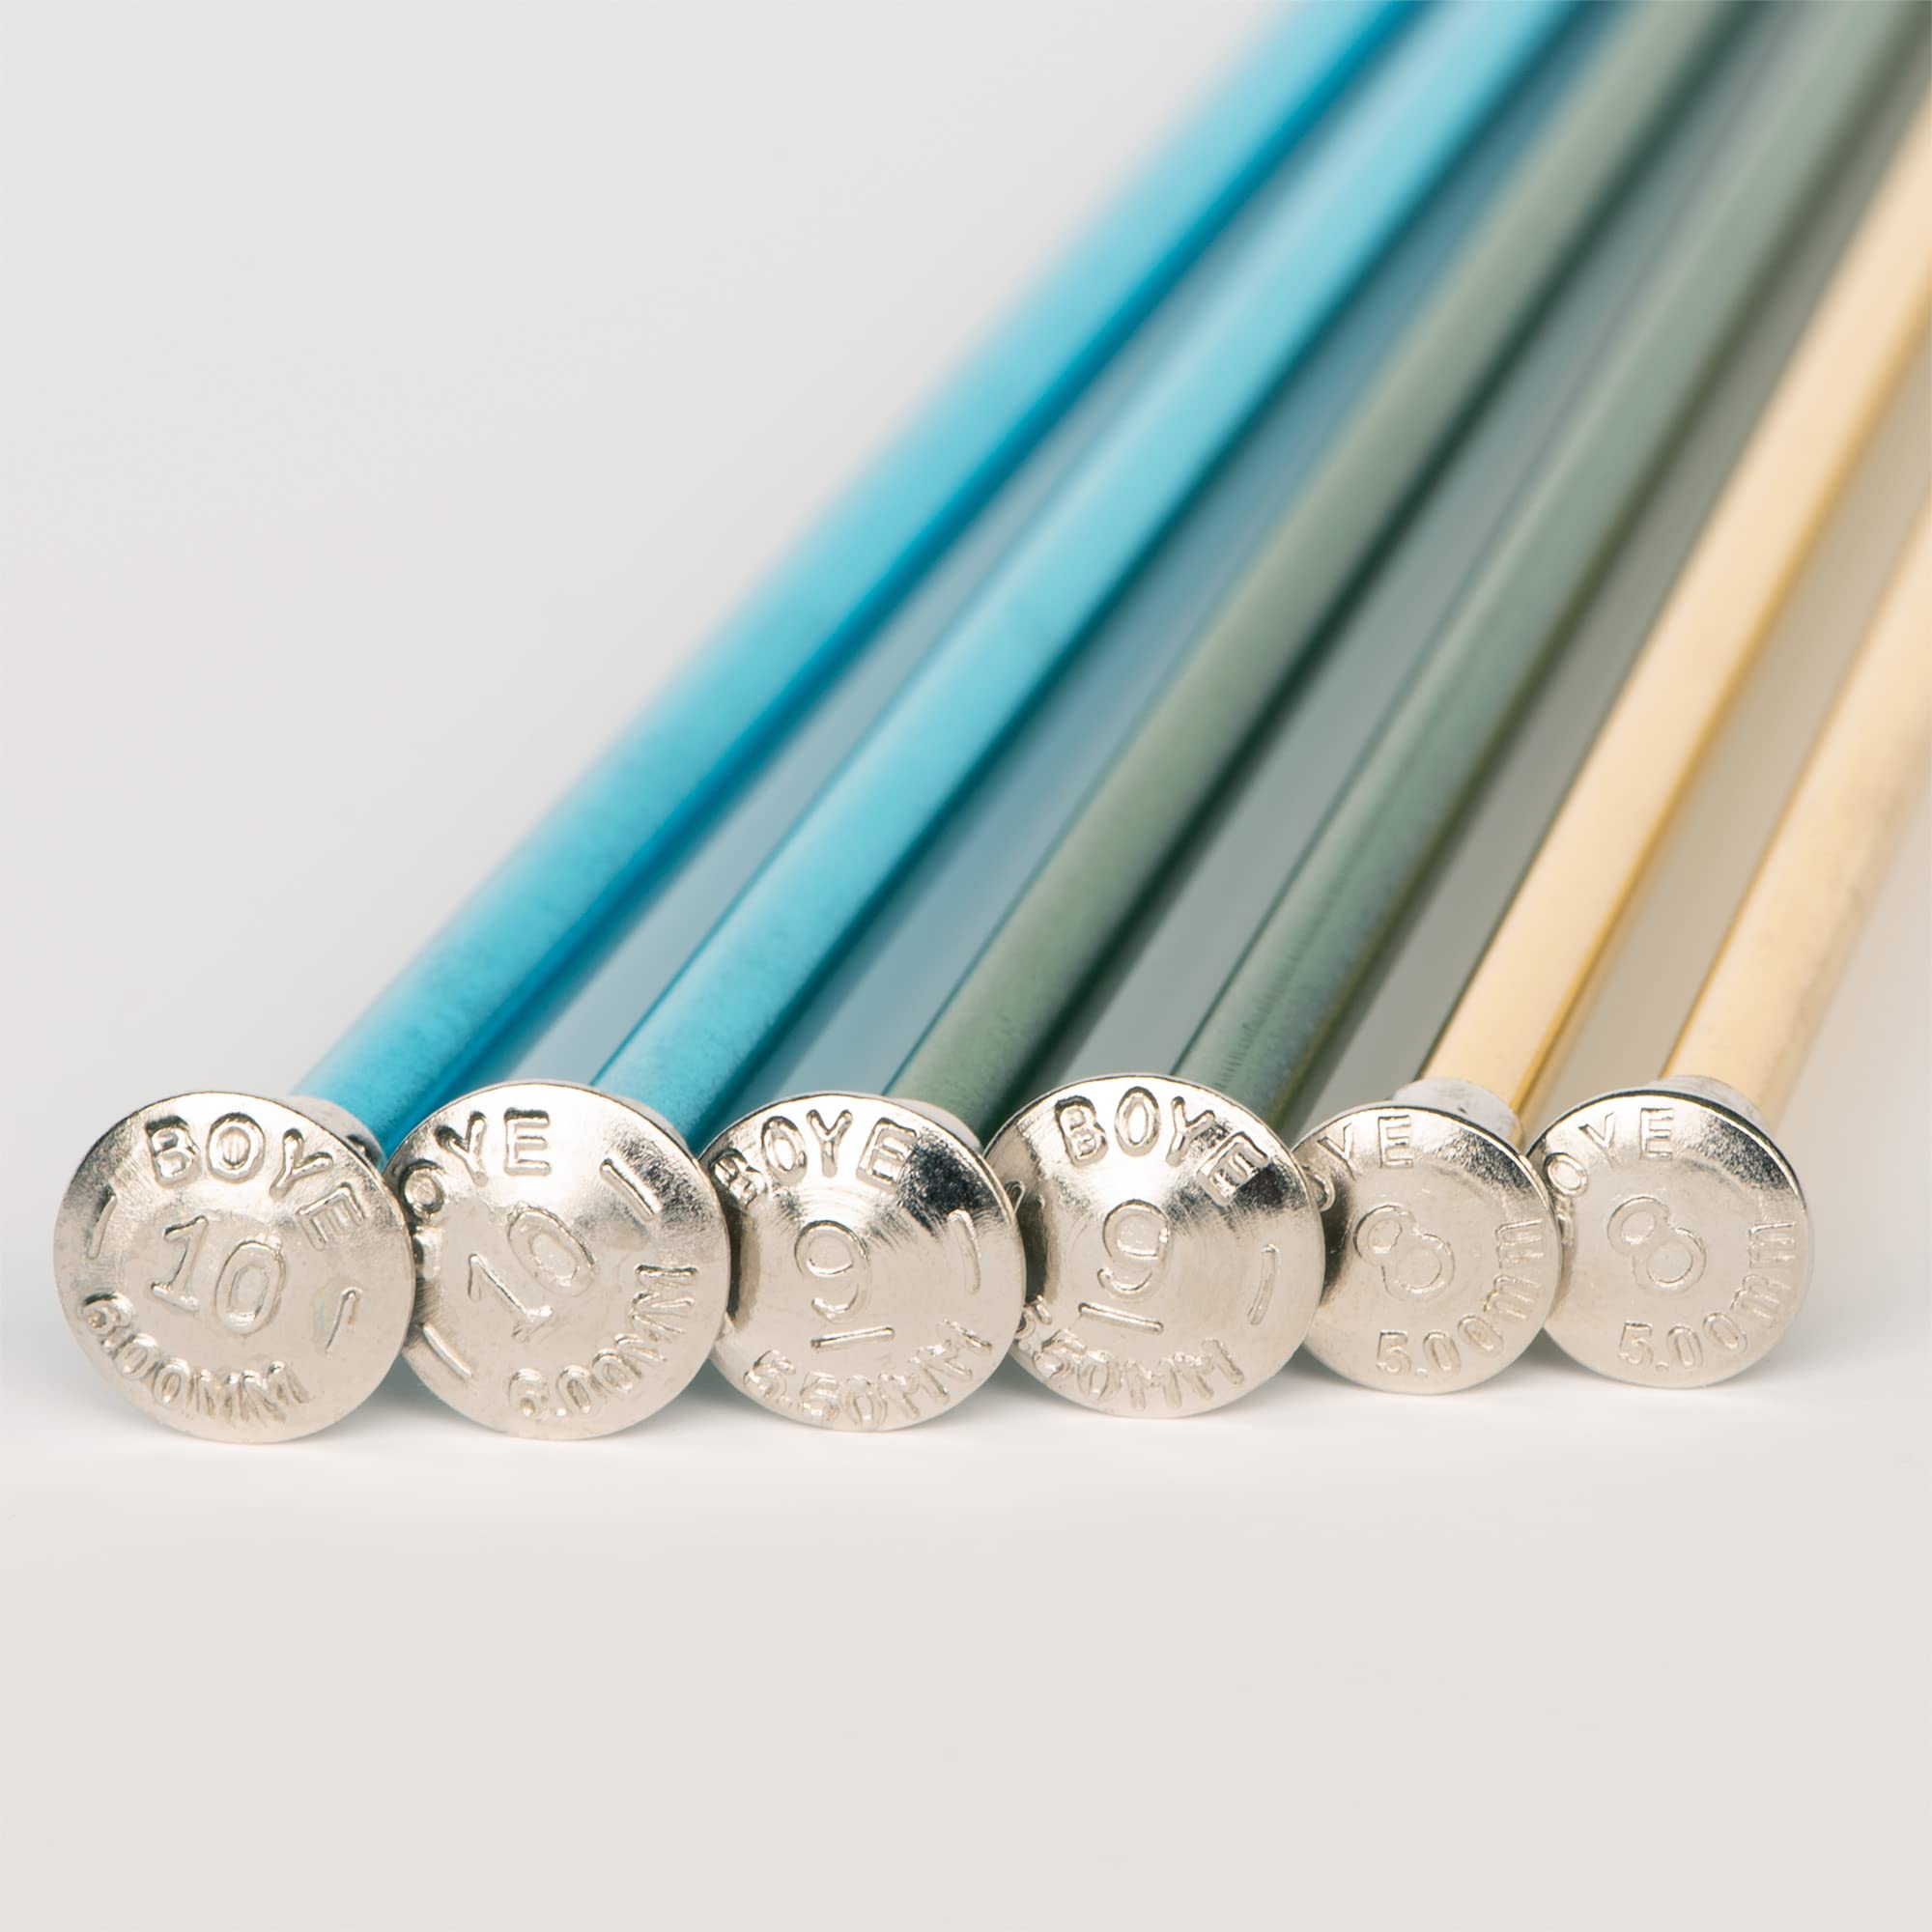 Boye Anodized Aluminum Straight Knitting Needle Set, US Sizes 8, 9, 10, Multicolor